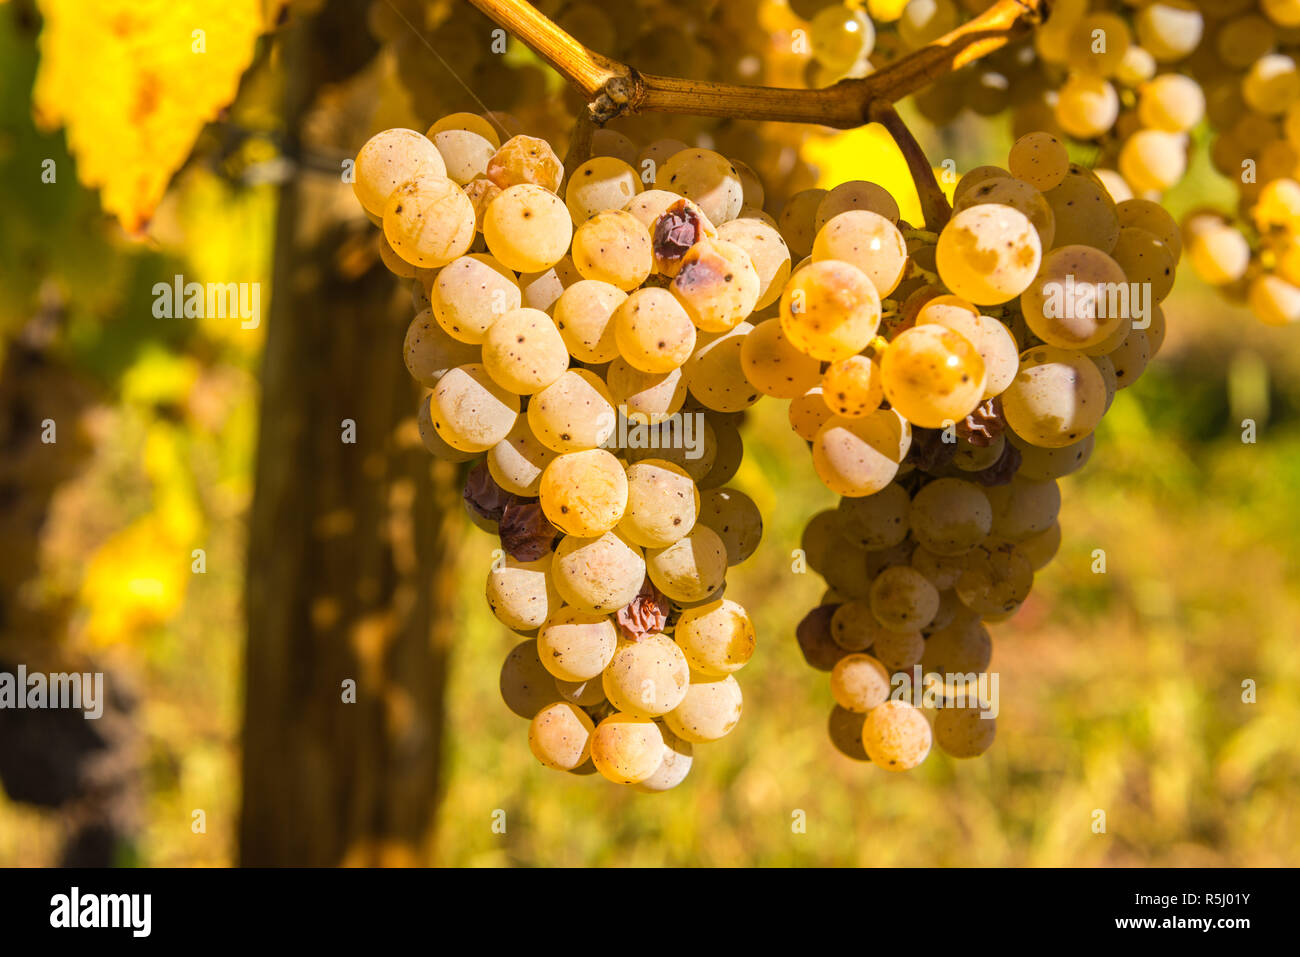 Grappes de raisins Riesling mûr peu avant la récolte du vin, village de Schweich, Moselle et la vallée. Rhineland-Palantine, Germany, Europe Banque D'Images